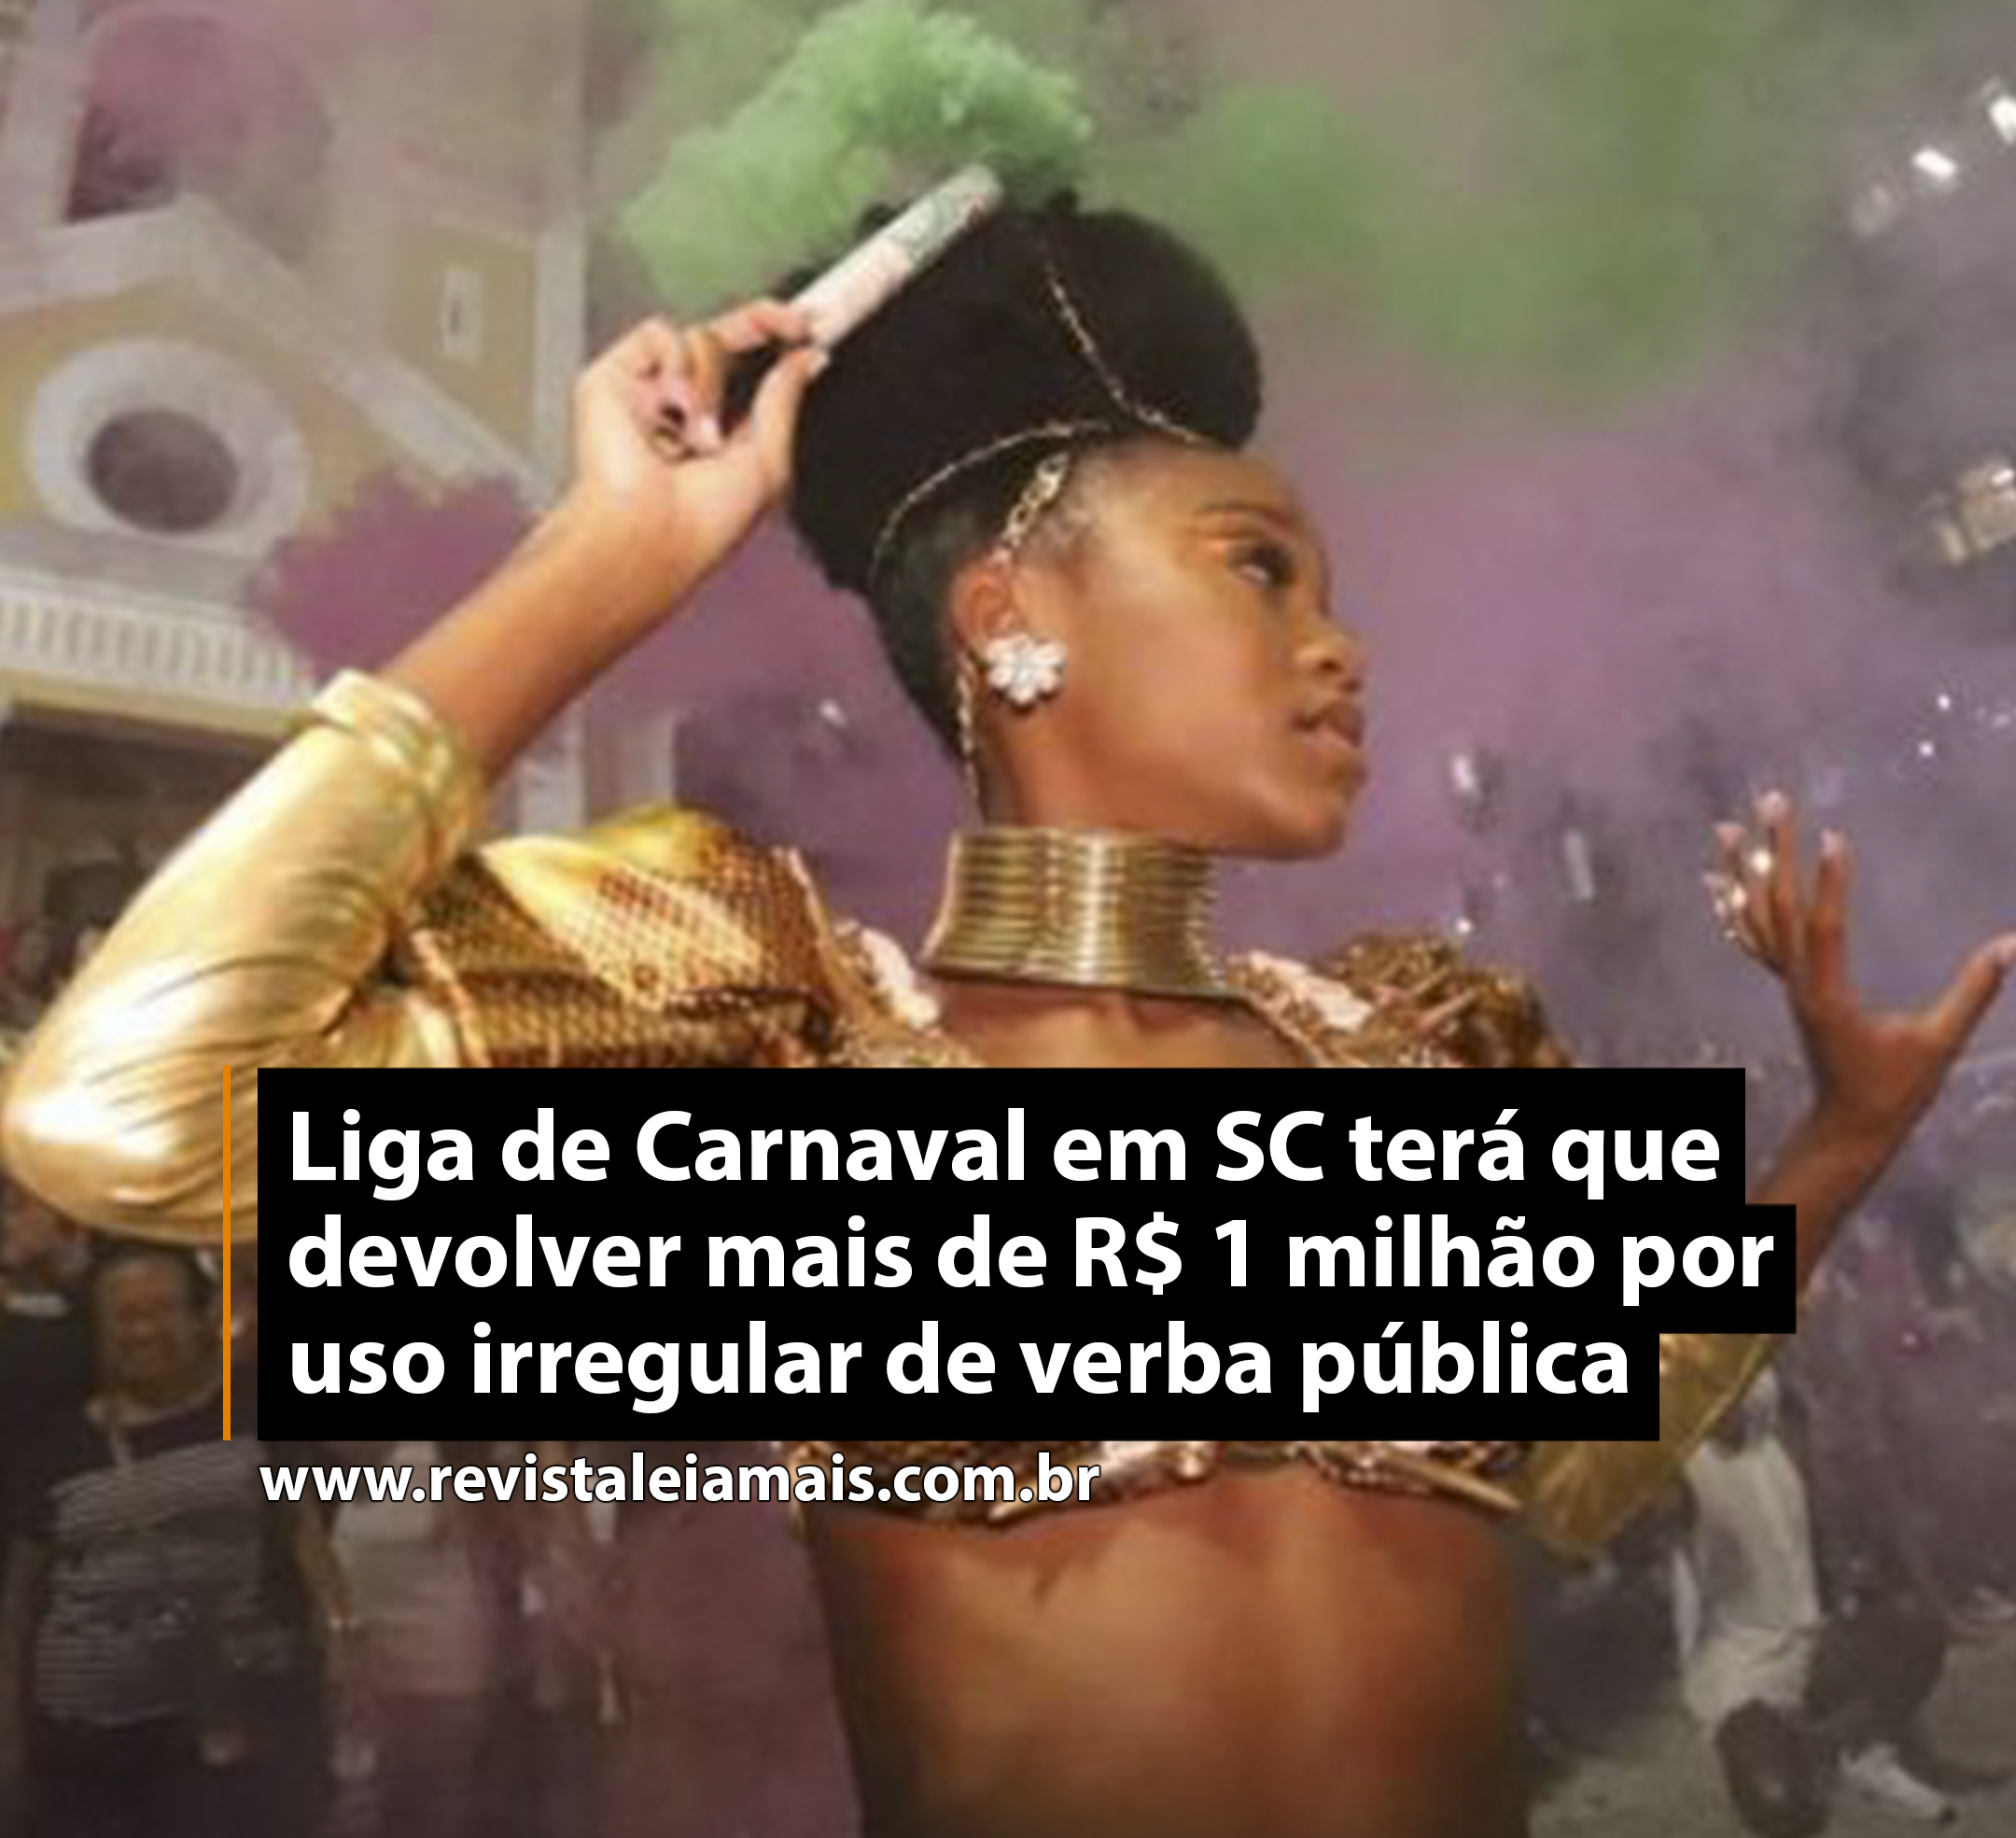 Liga de Carnaval em SC terá que devolver mais de R$ 1 milhão por uso irregular de verba pública